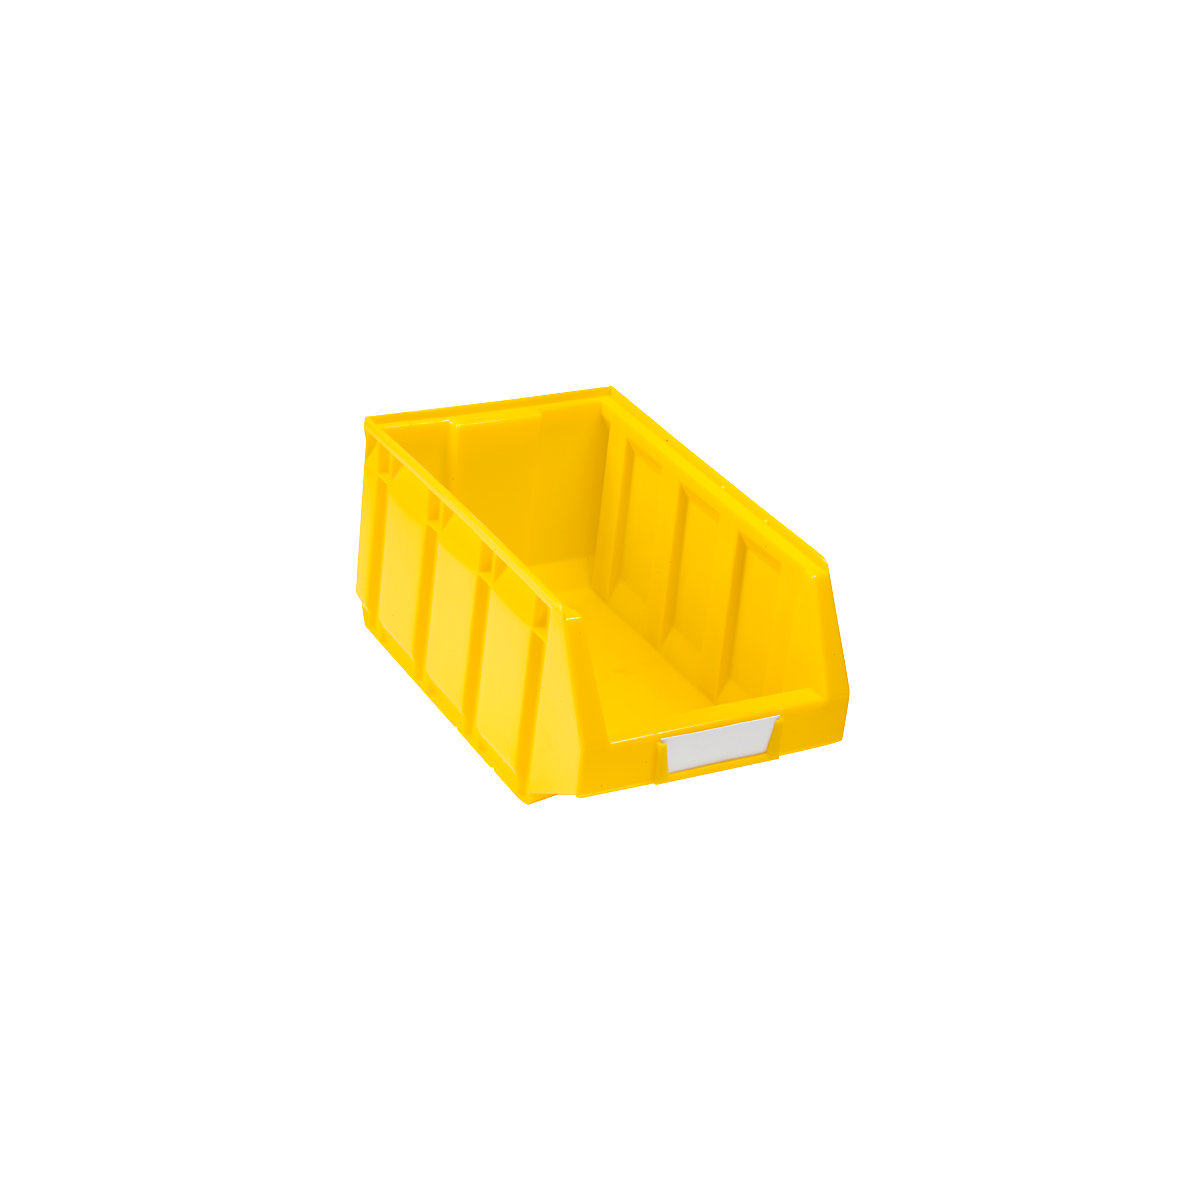 Otwarty pojemnik magazynowy z polietylenu, dł. x szer. x wys. 345 x 205 x 164 mm, żółty, opak. 24 szt.-7